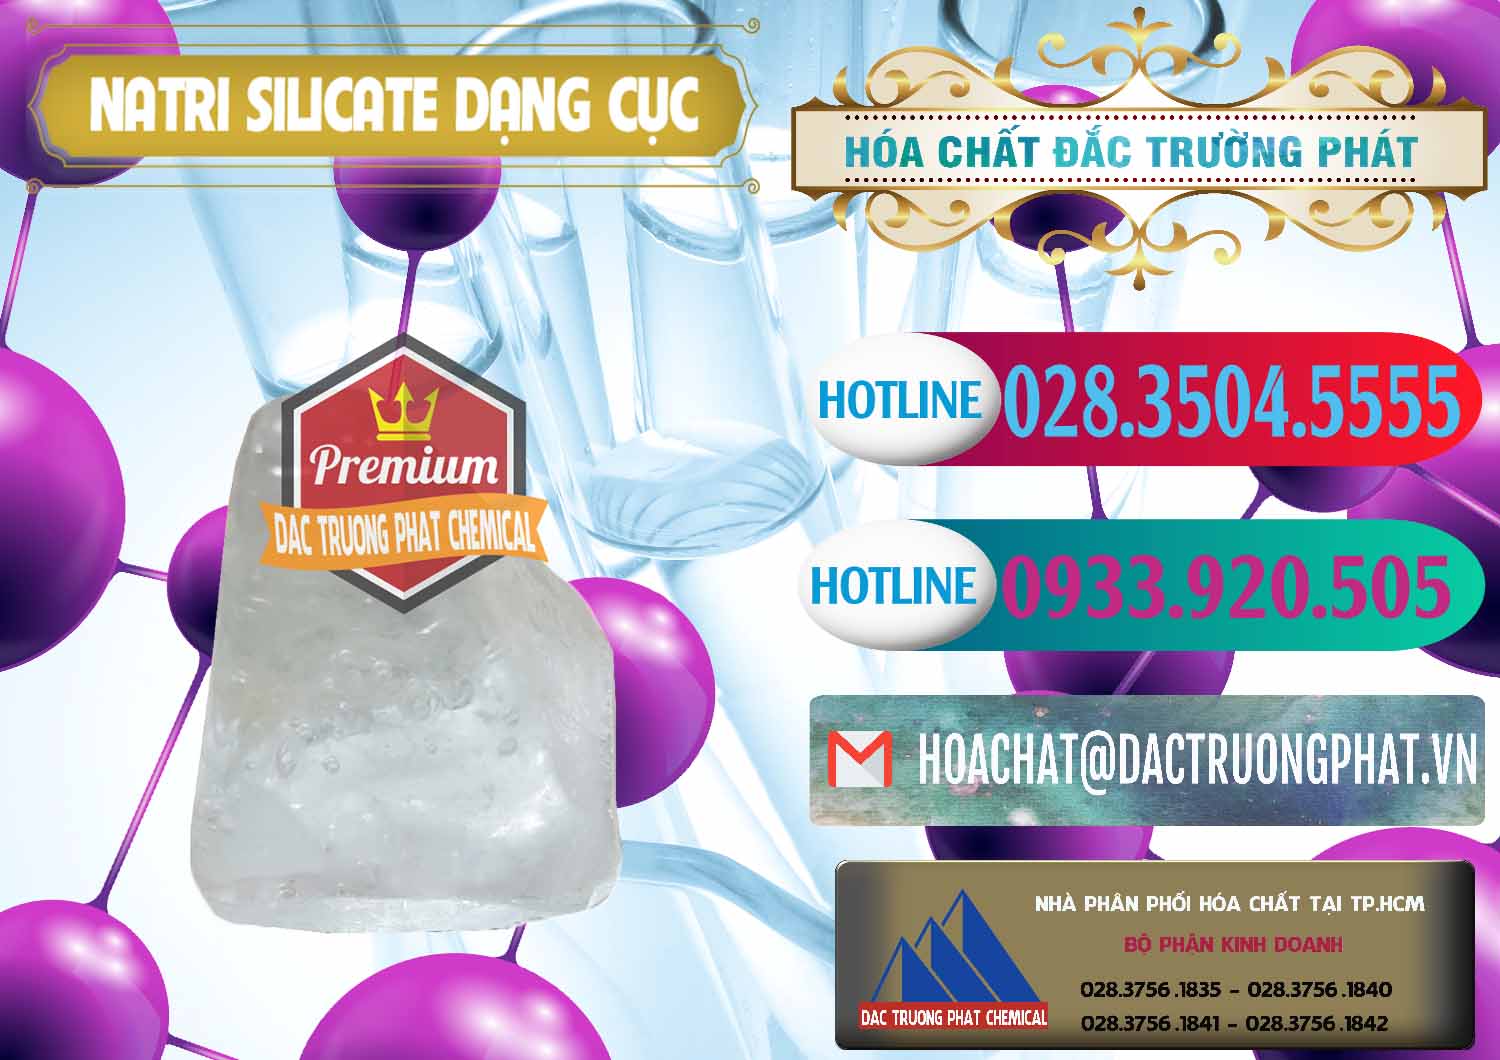 Công ty chuyên bán và phân phối Natri Silicate - Na2SiO3 - Keo Silicate Dạng Cục Ấn Độ India - 0382 - Công ty cung cấp - nhập khẩu hóa chất tại TP.HCM - truongphat.vn